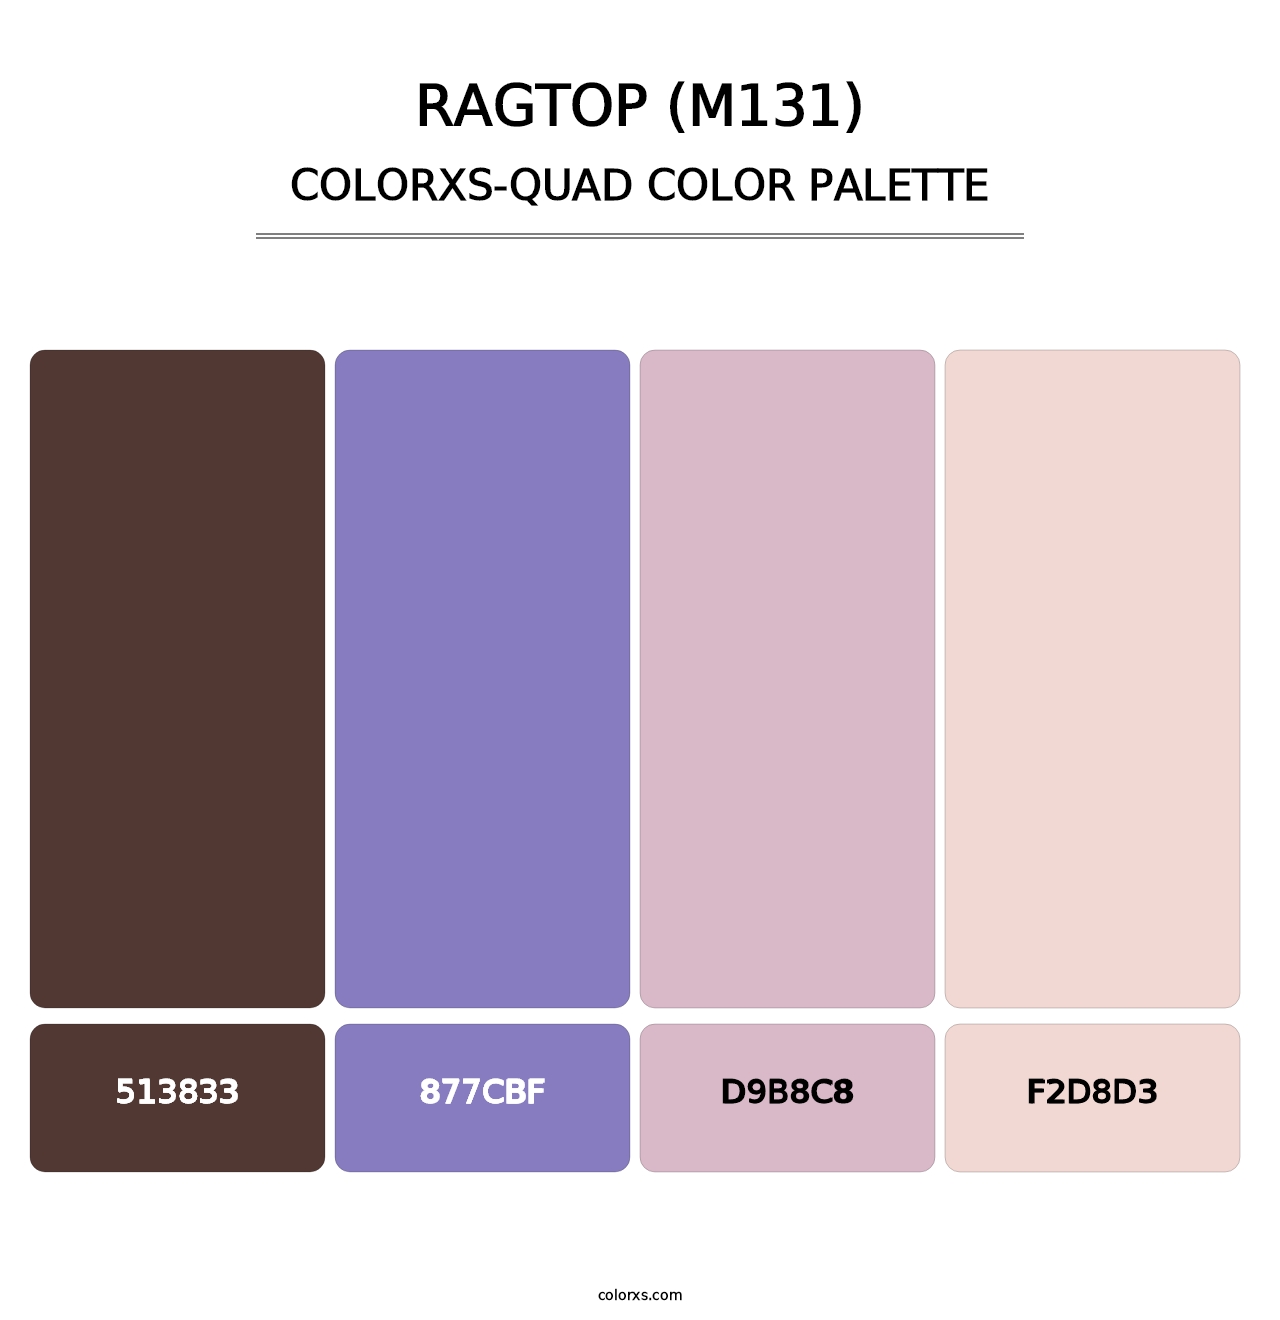 Ragtop (M131) - Colorxs Quad Palette